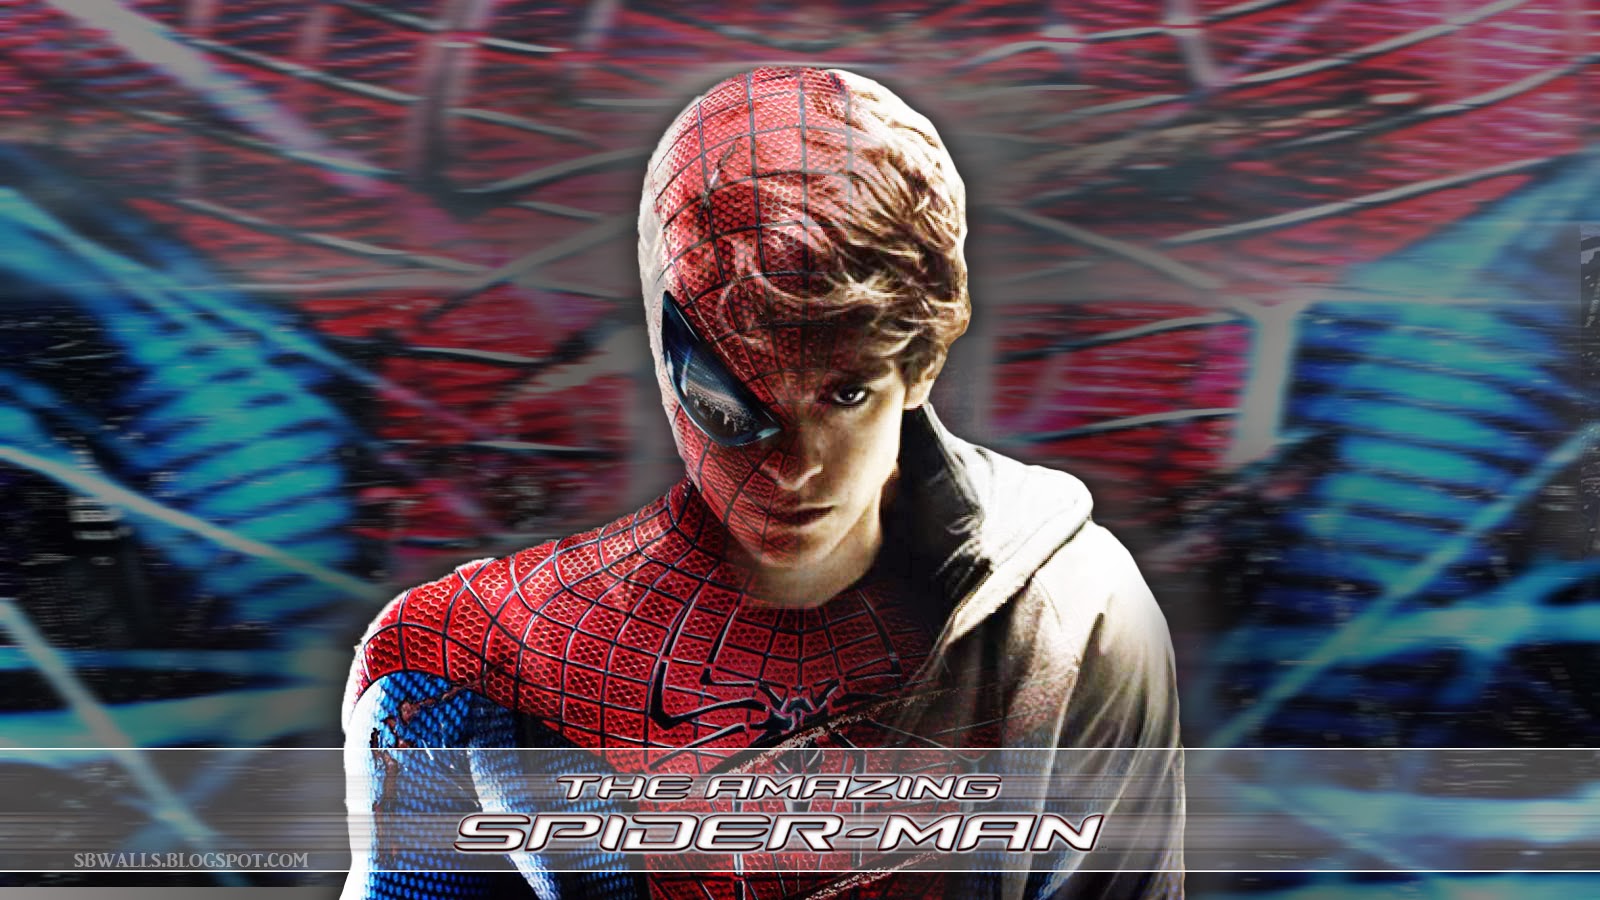 tapete spiderman terbaru,erfundener charakter,fleisch,spider man,film,superheld